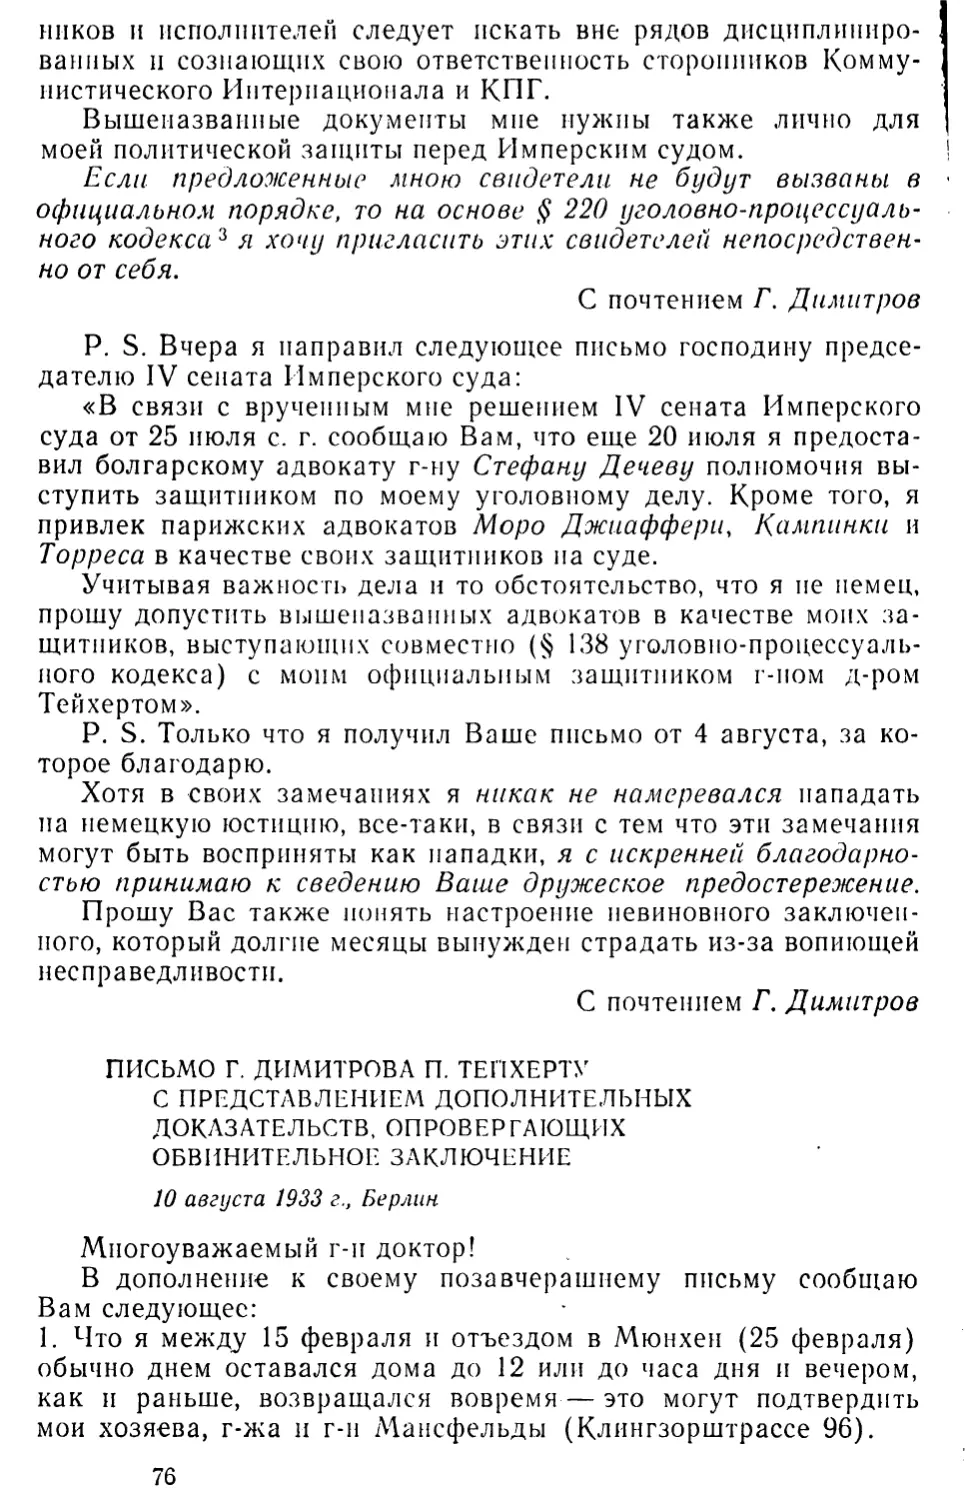 Письмо Г. Димитрова П. Тейхерту с представлением дополнительных доказательств, опровергающих обвинительное заключение. 10 августа 1933 г